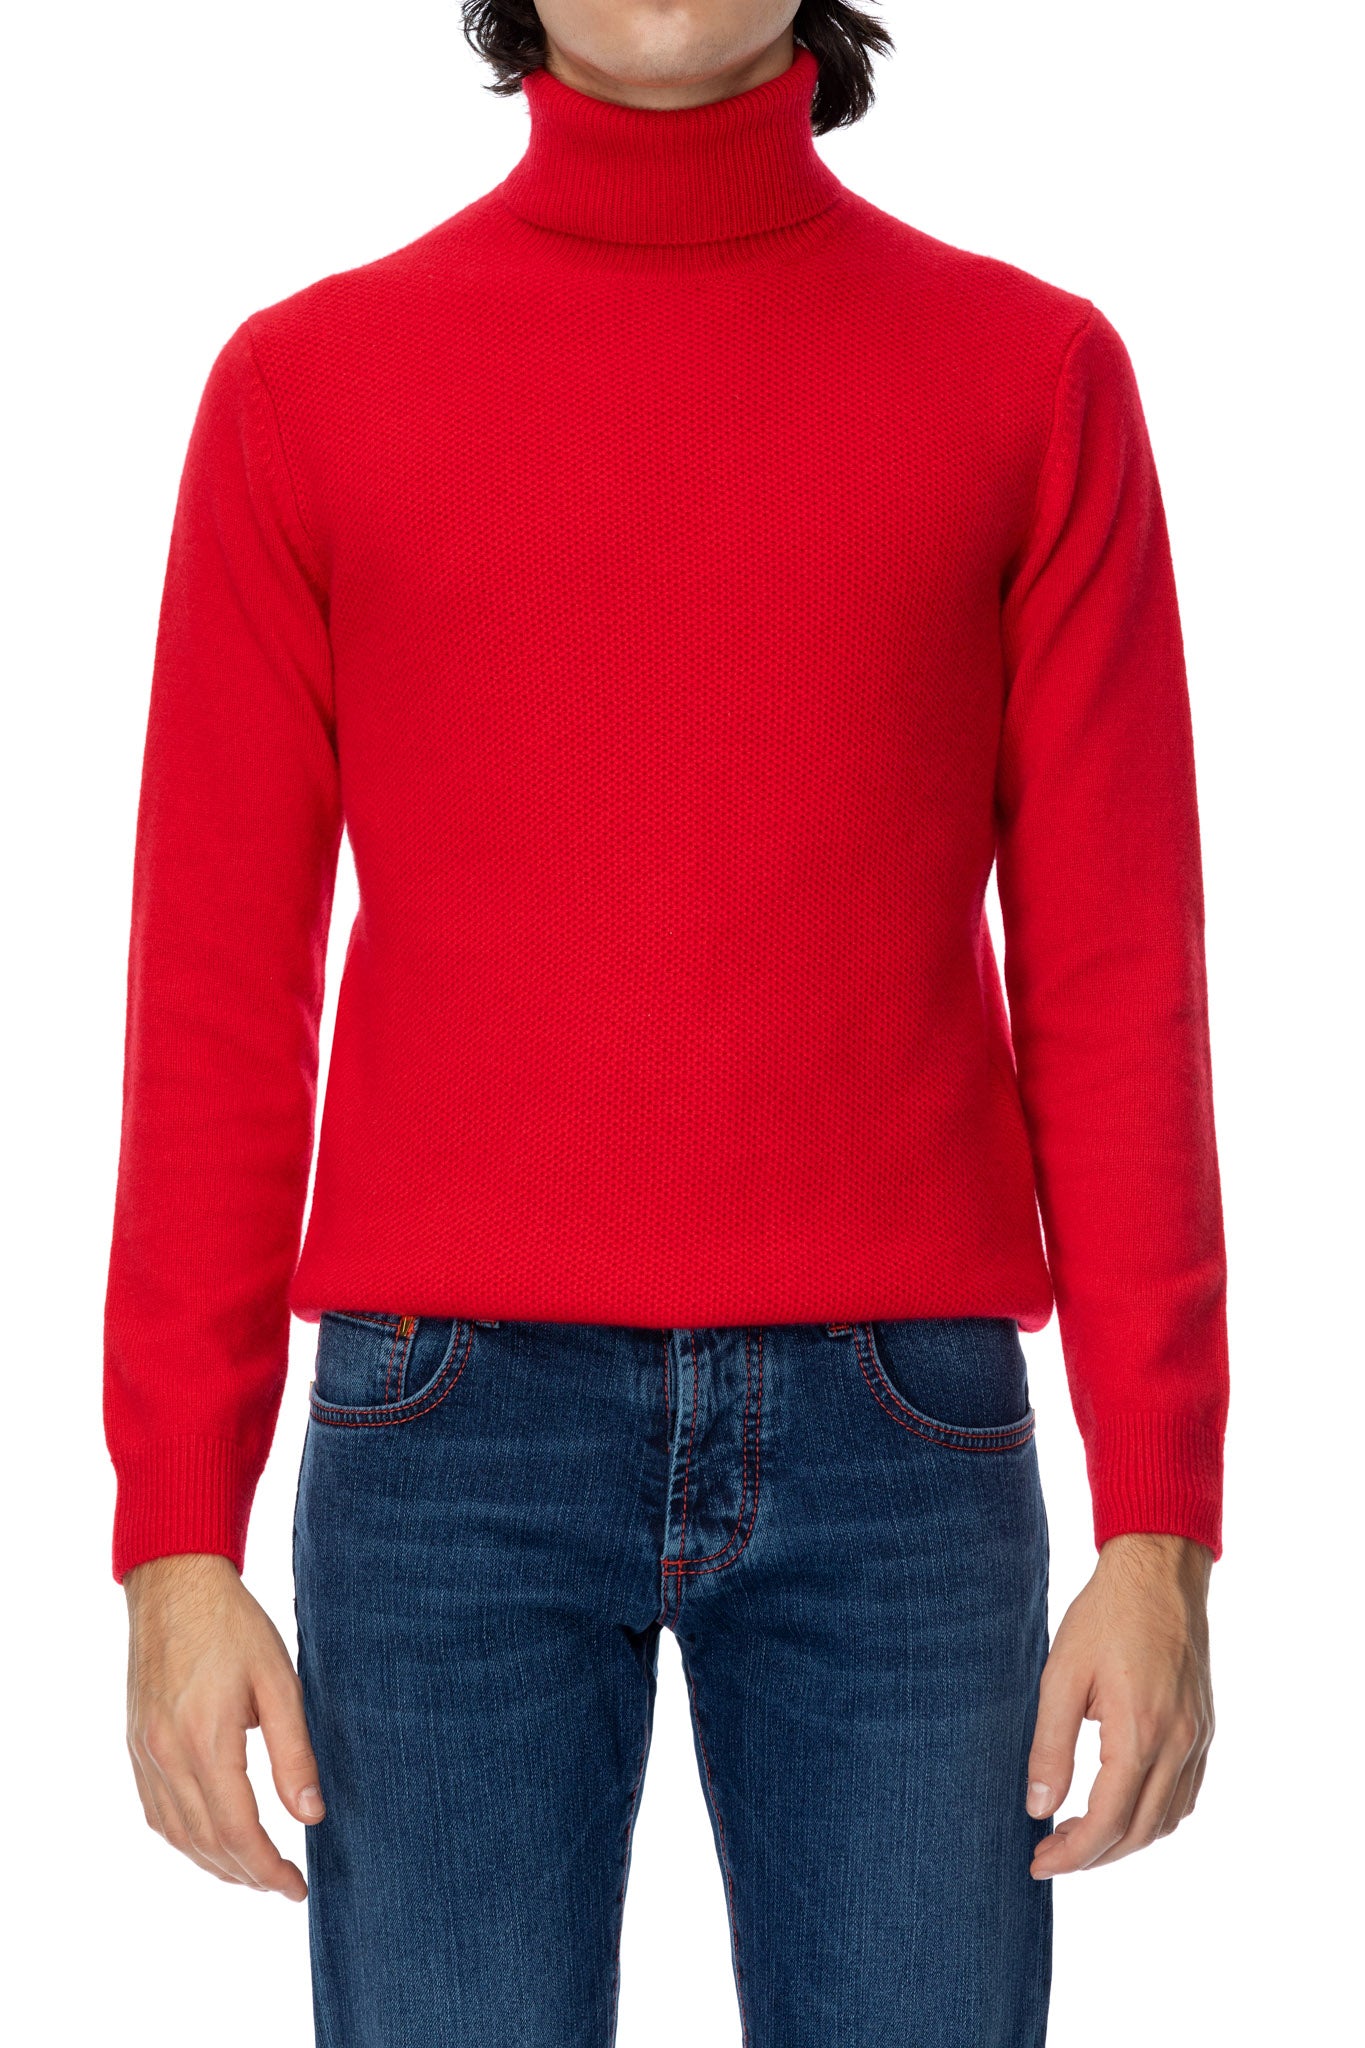 Maglione al collo in cashmere rosso